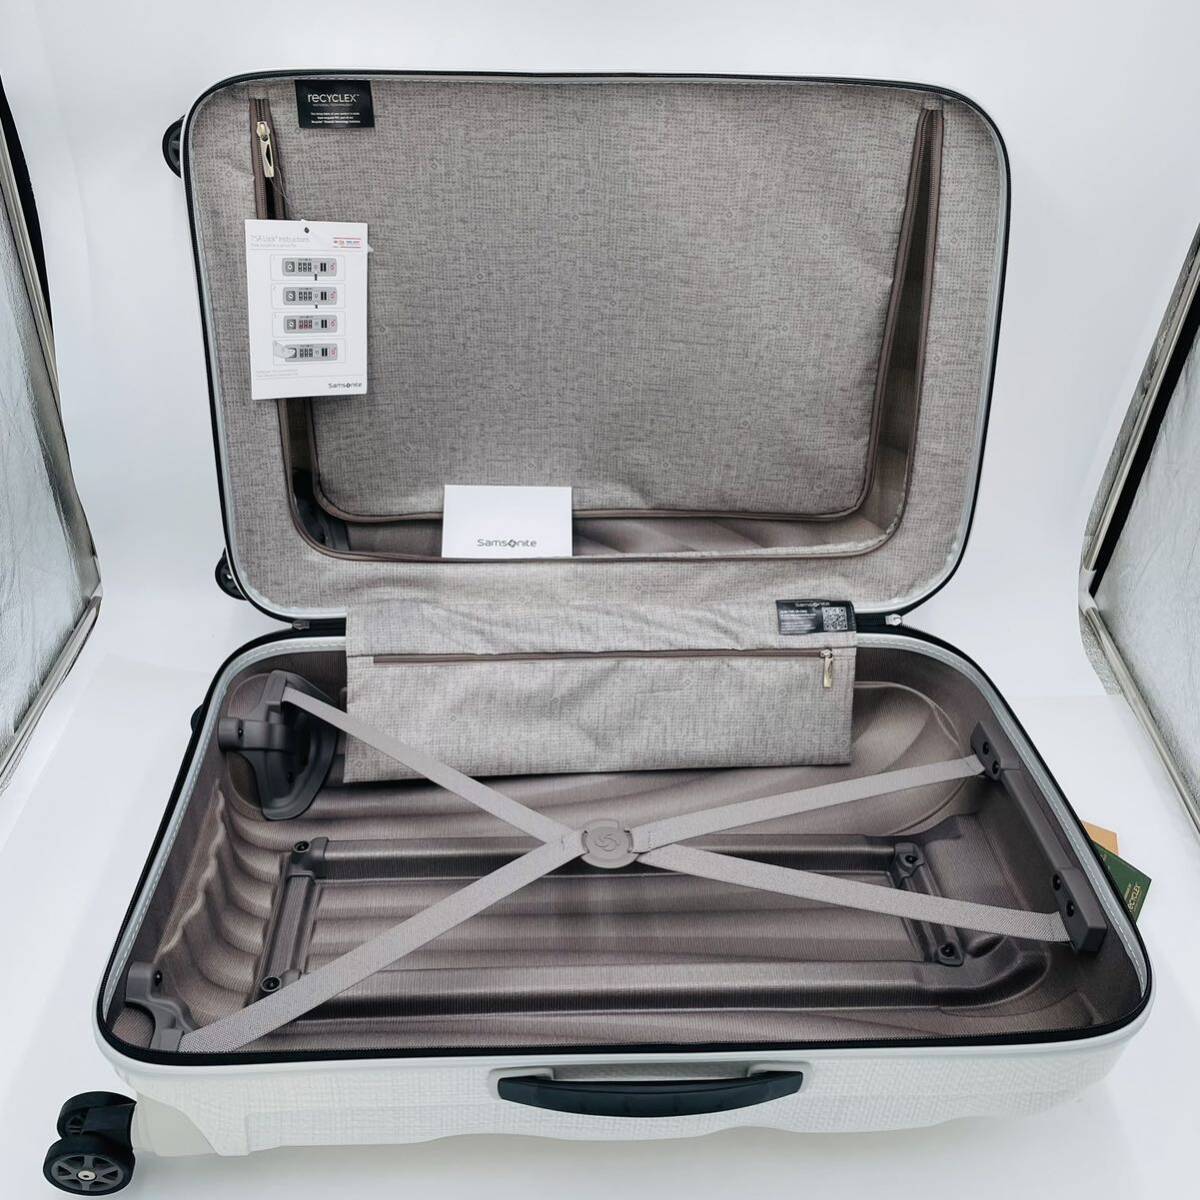 [ не использовался с биркой ]SAMSONITE( Samsonite ) чемодан Carry кейс si- свет C-LITE spinner 69 68L 69cm 2.5kg легкий 